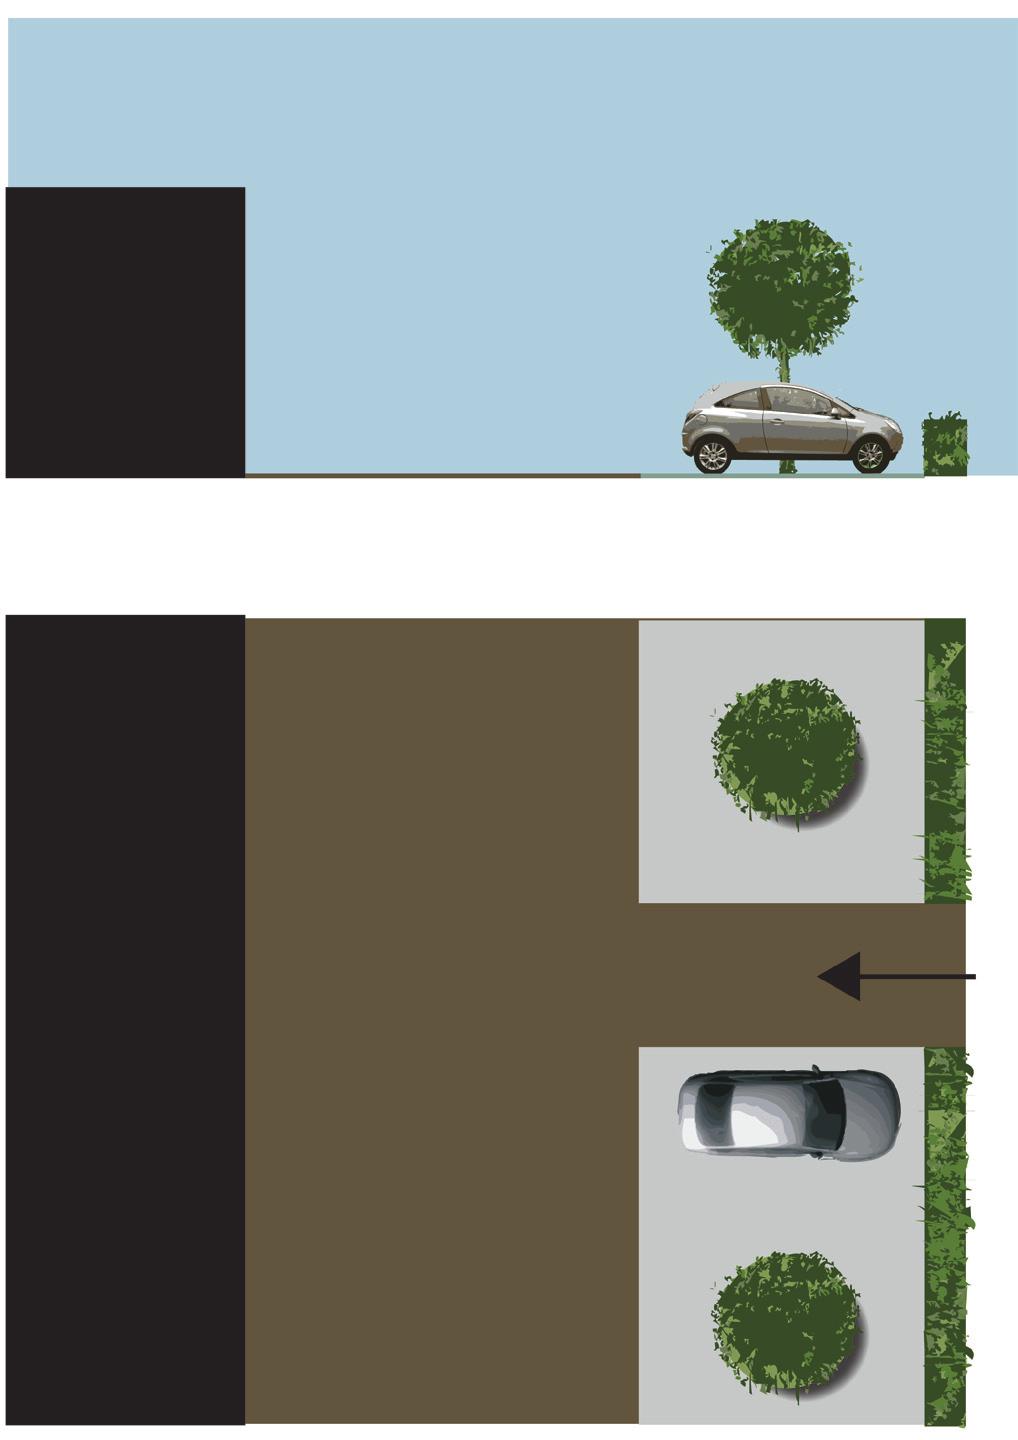 artikel 1. 8. achteruitbouwzone voor inbreidingsproject 1. bestemming 1.1. hoofdbestemming Bestemd voor de aanleg van verharding met begeleidend groen ten behoeve van het nemen van ontsluiting naar de N50d en het inrichten van parkeerplaatsen.